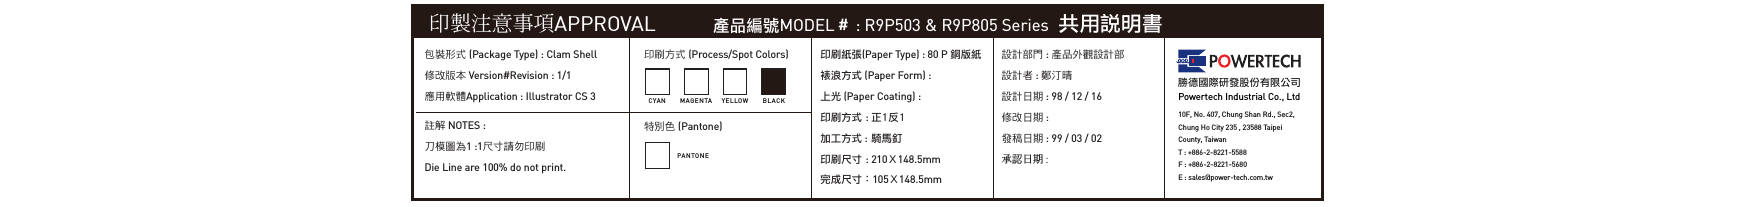 印製注意事項APPROVAL 產品編號MODEL＃ : R9P503 &amp; R9P805 Series  共用說明書包裝形式 (Package Type) : Clam Shell修改版本 Version#Revision : 1/1應用軟體Application : Illustrator CS 3印刷方式 (Process/Spot Colors)特別色 (Pantone)印刷紙張(Paper Type) : 80 P 銅版紙裱浪方式 (Paper Form) : 上光 (Paper Coating) :印刷方式 : 正1反1加工方式 : 騎馬釘印刷尺寸 : 210Ｘ148.5mm完成尺寸：105Ｘ148.5mm設計部門 : 產品外觀設計部設計者 : 鄭汀晴設計日期 : 98 / 12 / 16修改日期 : 發稿日期 : 99 / 03 / 02承認日期 : 勝德國際研發股份有限公司Powertech Industrial Co., Ltd10F, No. 407, Chung Shan Rd., Sec2, Chung Ho City 235 , 23588 TaipeiCounty, TaiwanT : +886-2-8221-5588F : +886-2-8221-5680E : sales@power-tech.com.twCYA N M A GEN TAPANTONEYELLO W BLA C K註解 NOTES :刀模圖為1 :1尺寸請勿印刷Die Line are 100% do not print.